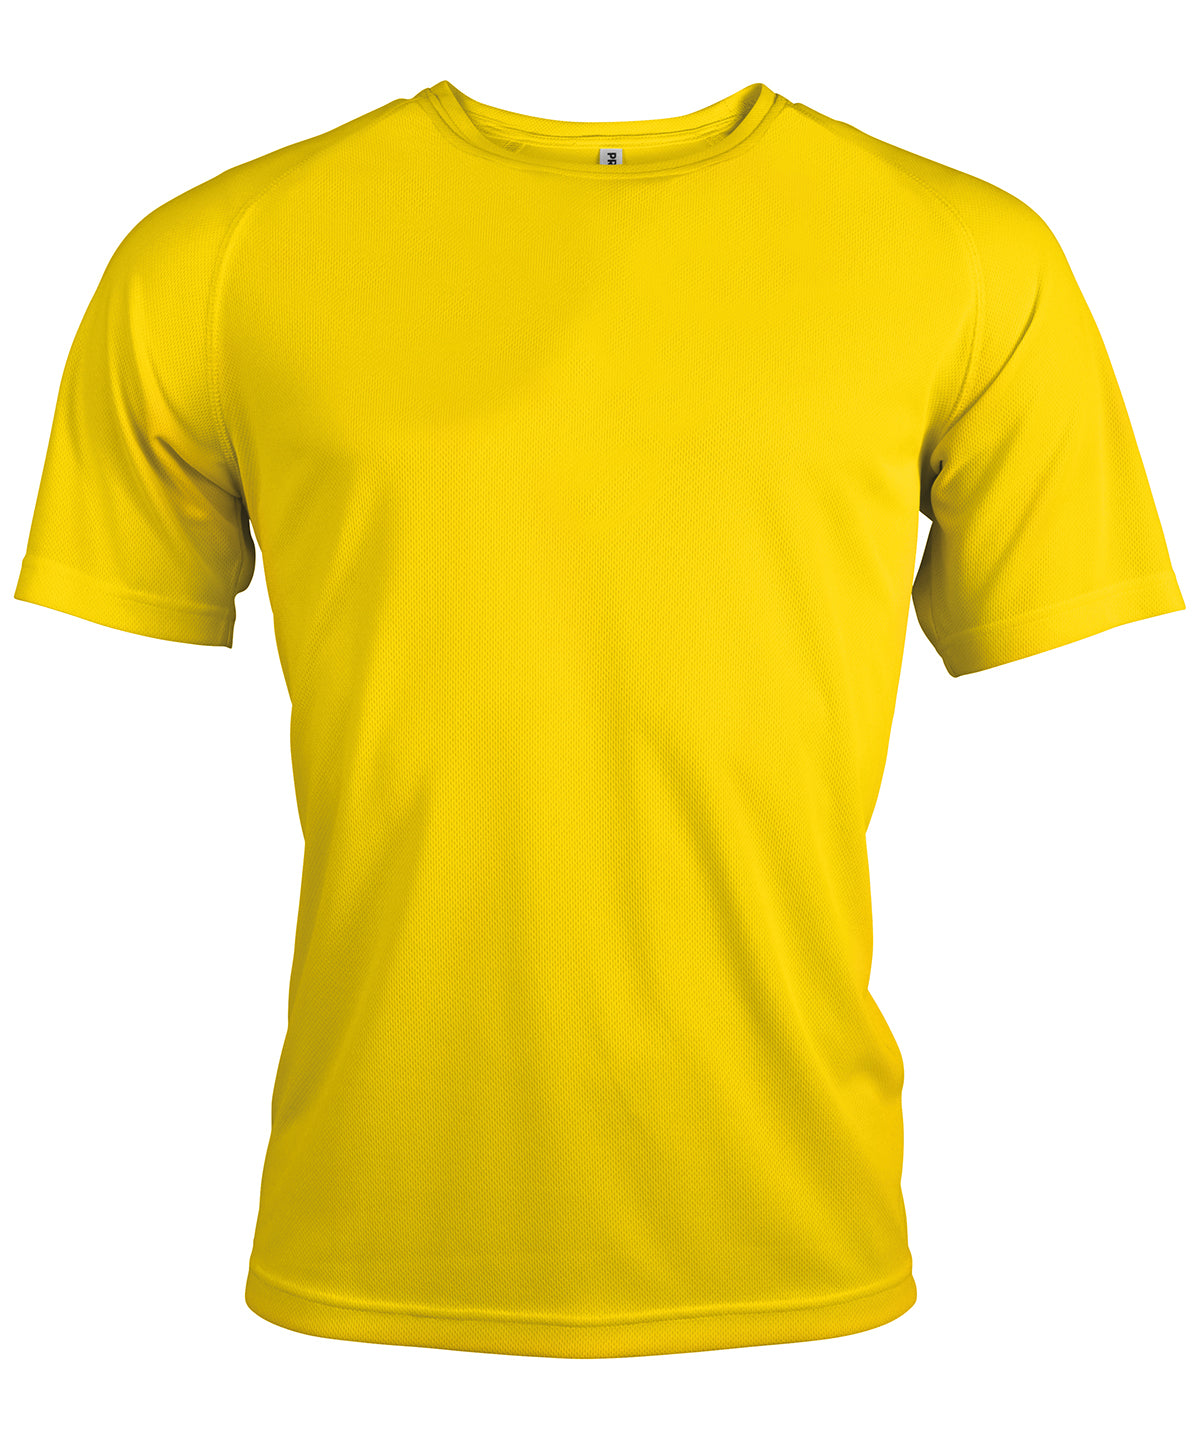 Stuttermabolir - Men's Short-sleeved Sports T-shirt